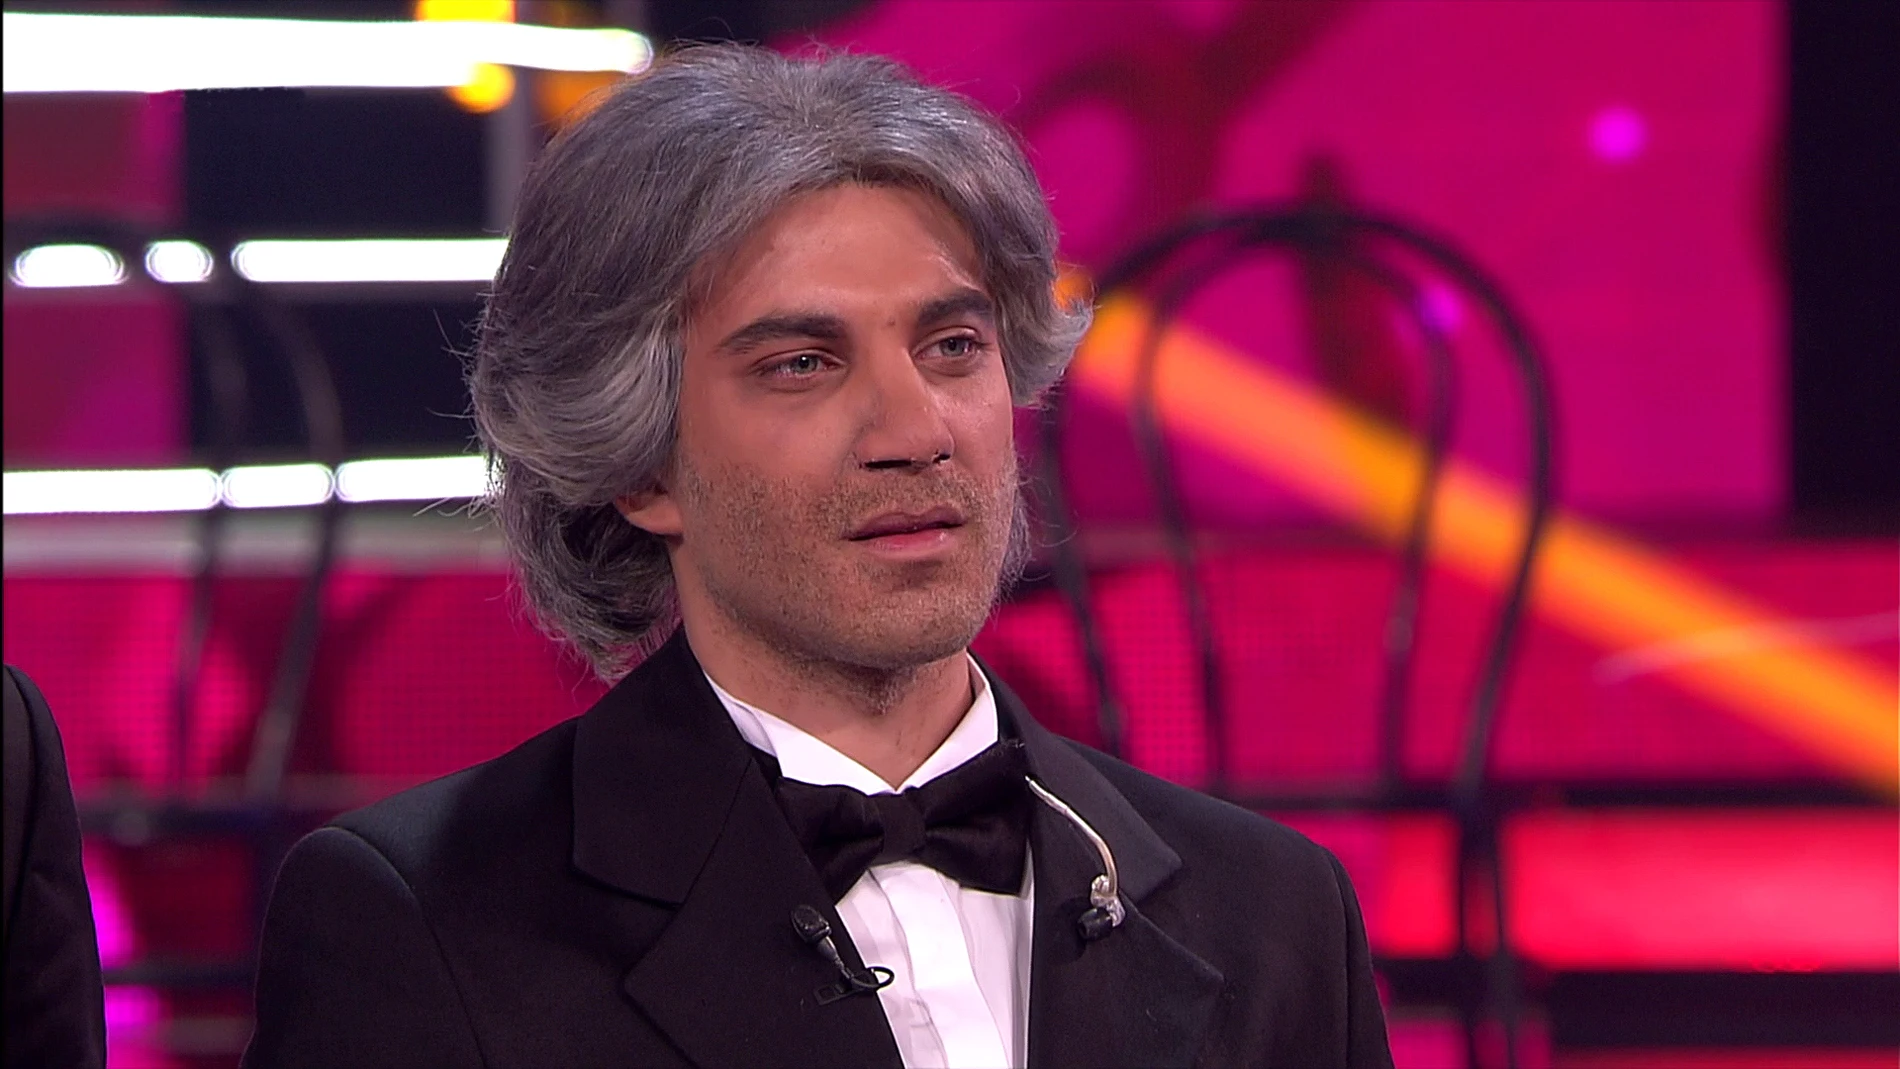 Blas Cantó, emocionado tras imitar a Andrea Bocelli